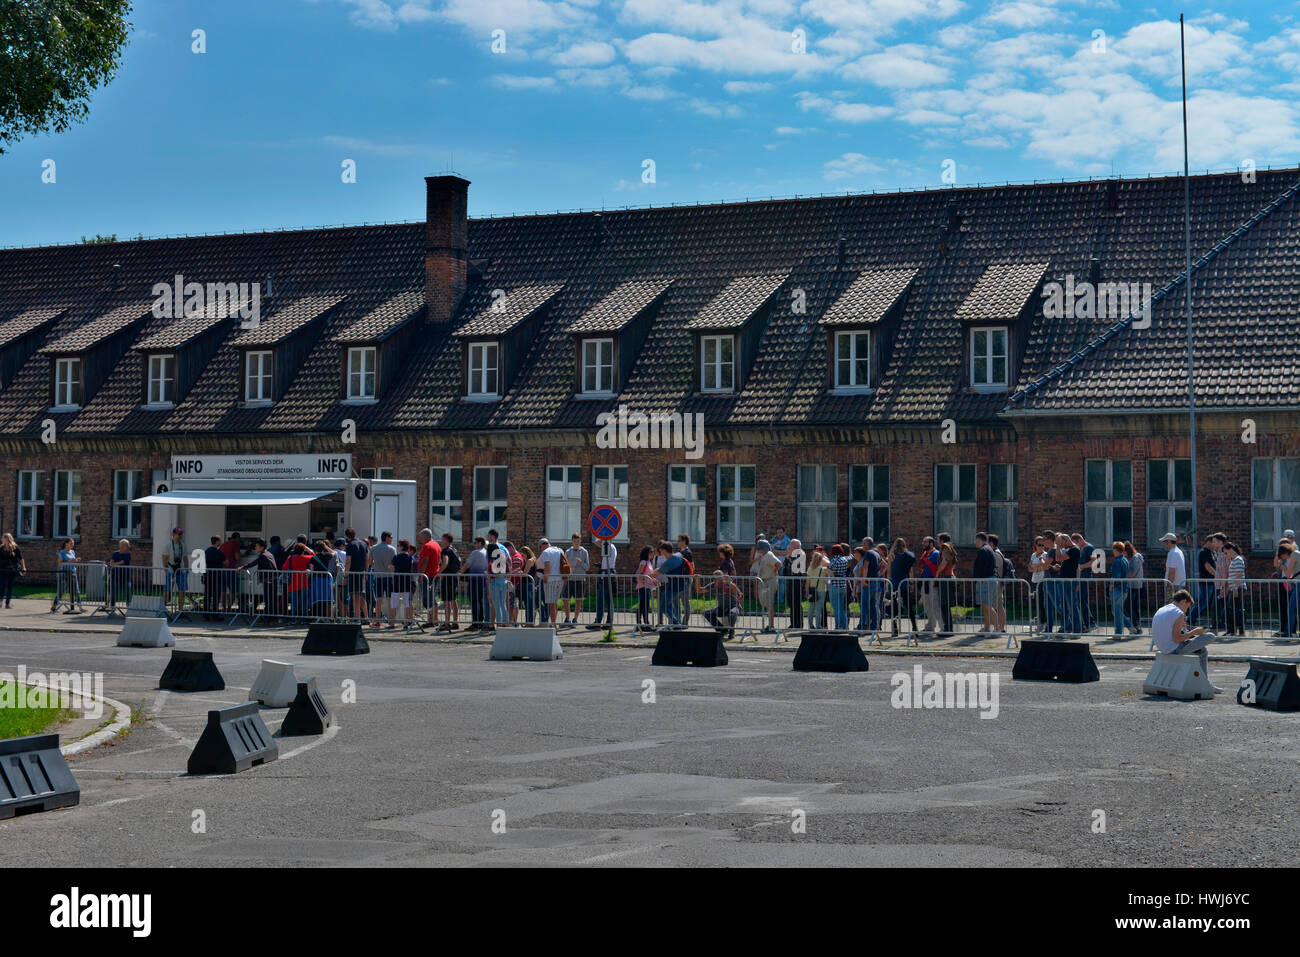 Besucherzentrum, Stammlager I, Konzentrationslager, Auschwitz-Birkenau, Auschwitz, Polen Stock Photo